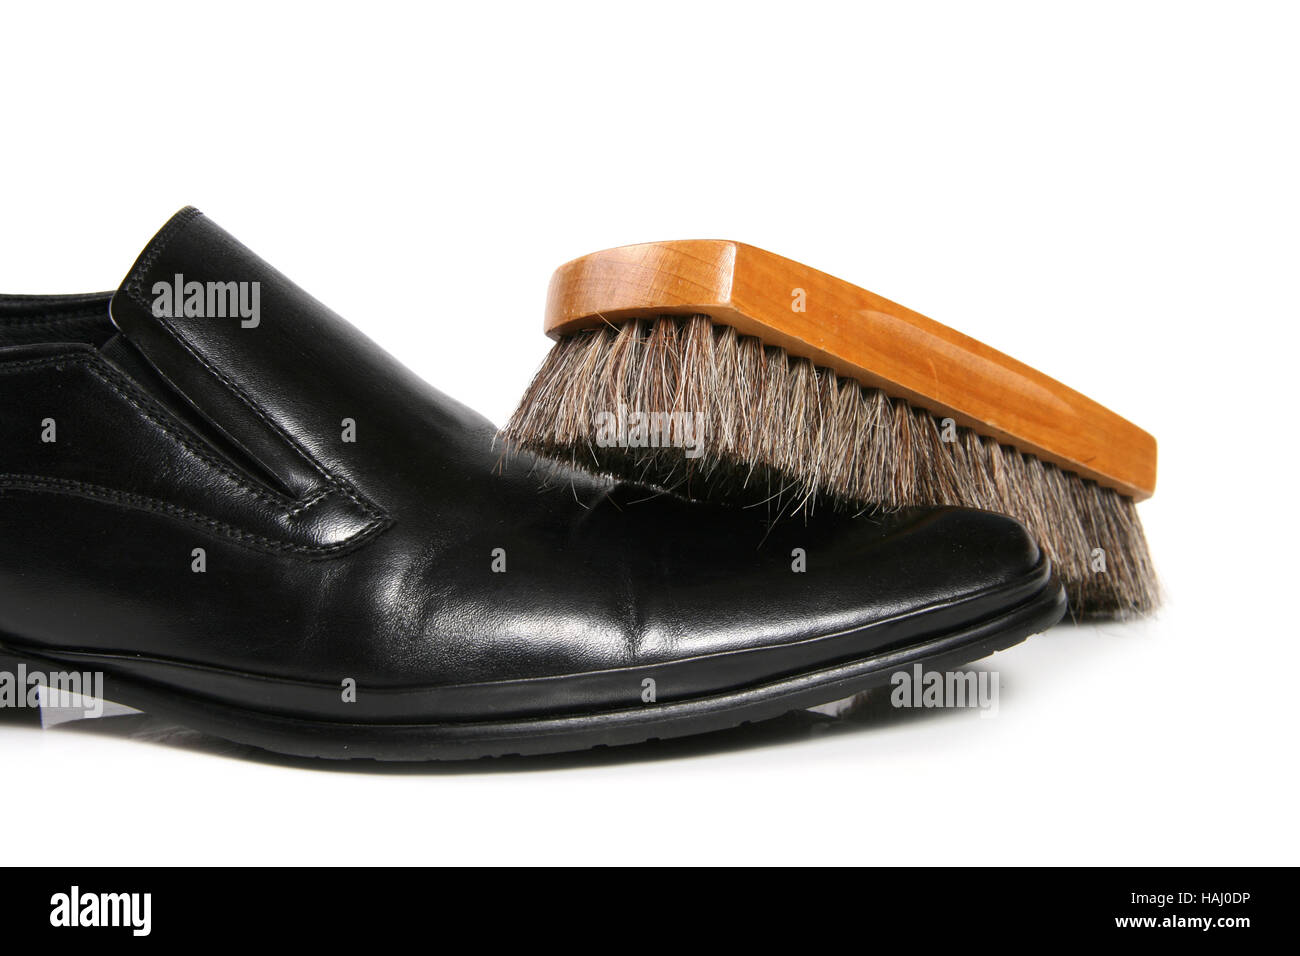 black leather shoe and brush Stock Photo